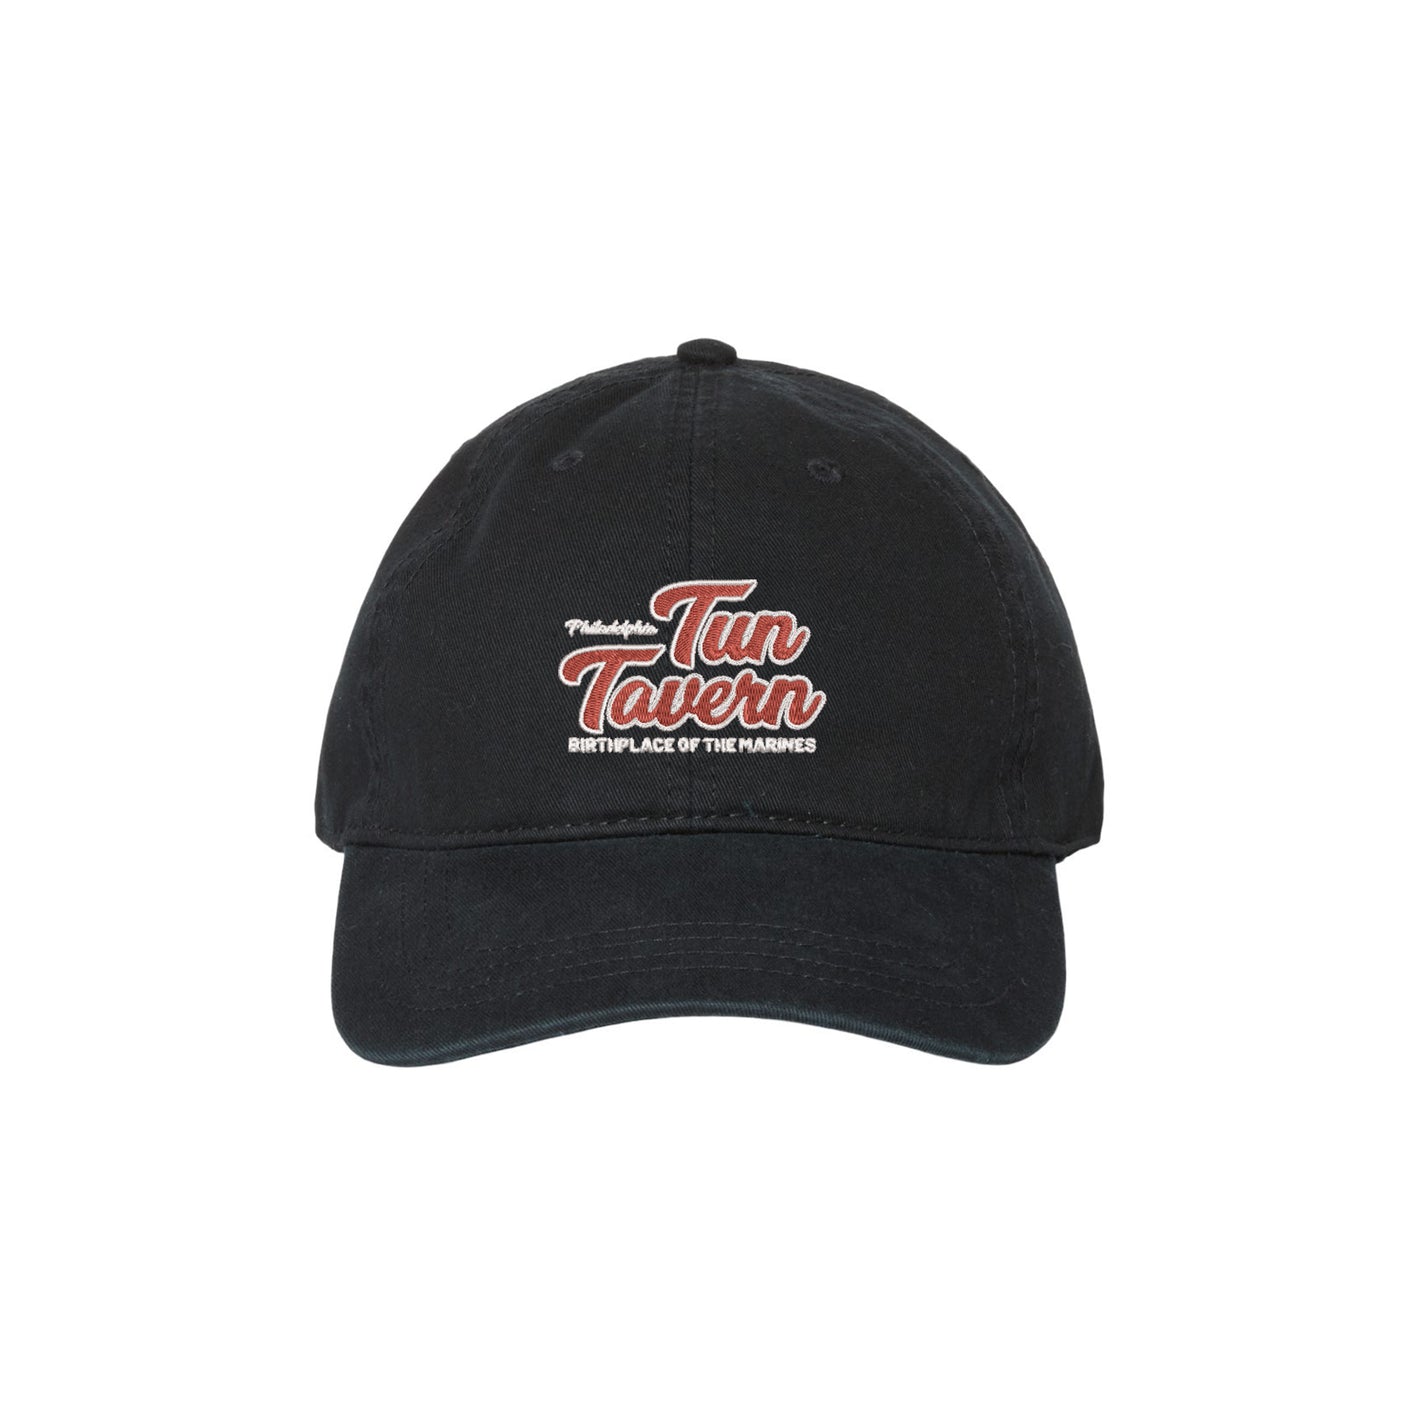 Tun Tavern Script Unstructured Hat